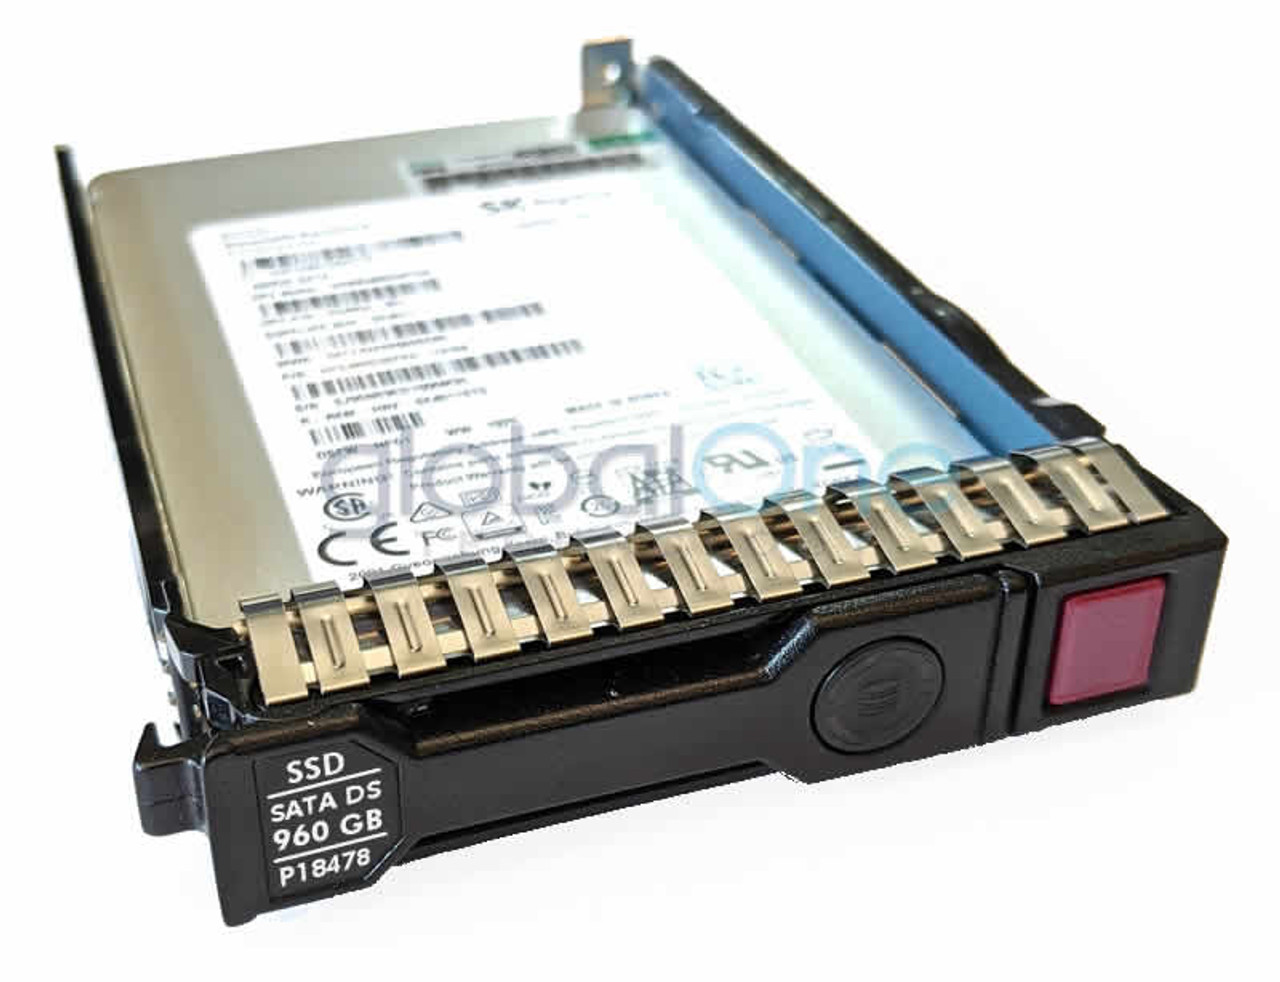 専用売り場 日本ヒューレット・パッカード [P18434-B21] 960GB MU SC 2.5型 6G SATA DS MV ソリッドス 内蔵型 SSD